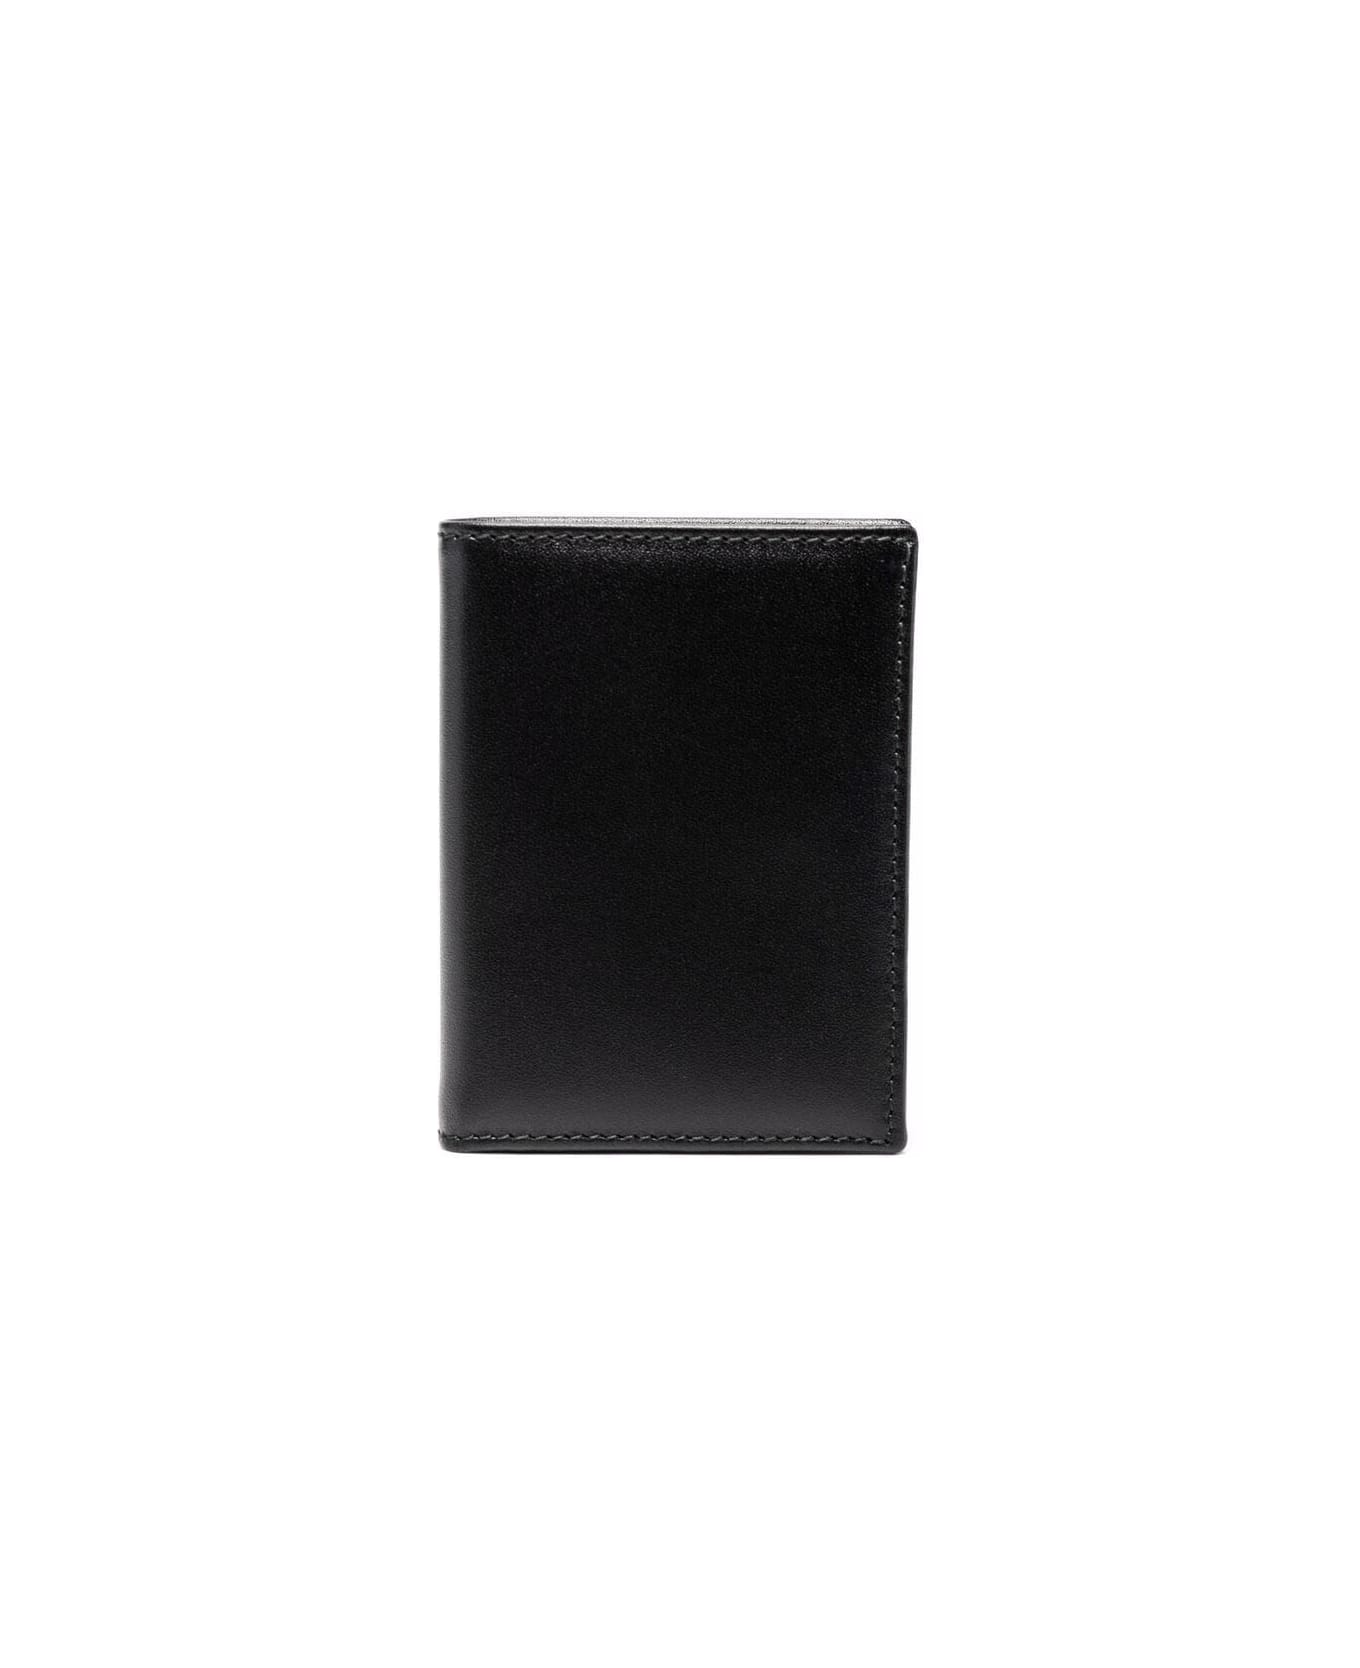 Comme des Garçons Wallet Classic Group Wallet - Black 財布